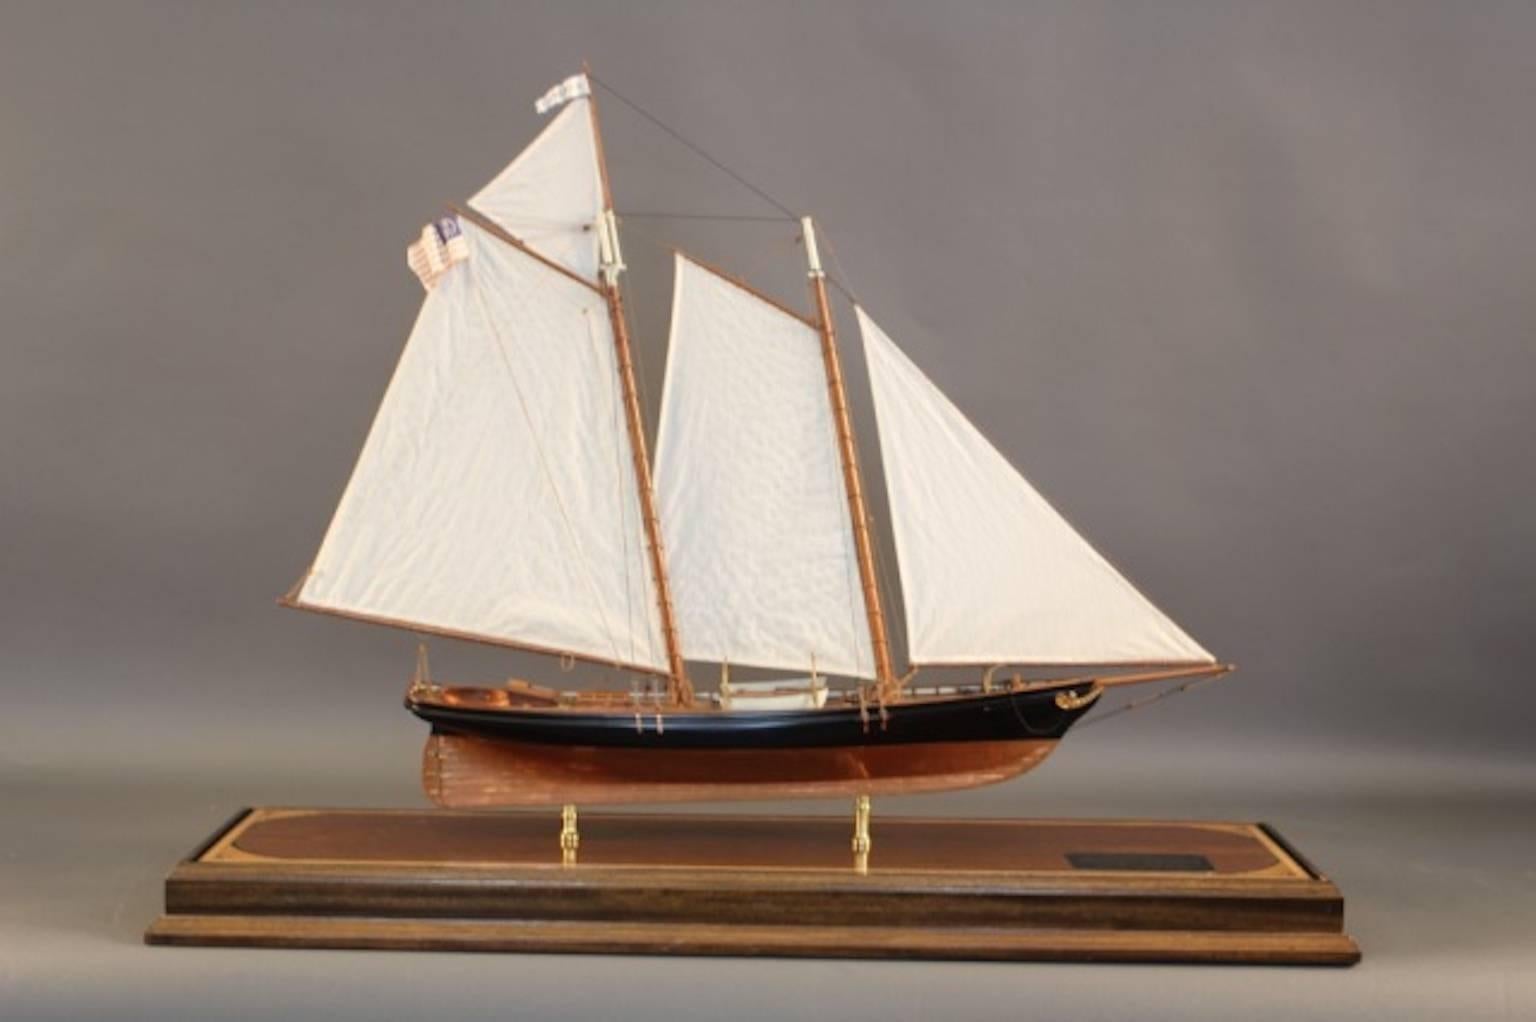 Model of the Schooner Yacht 